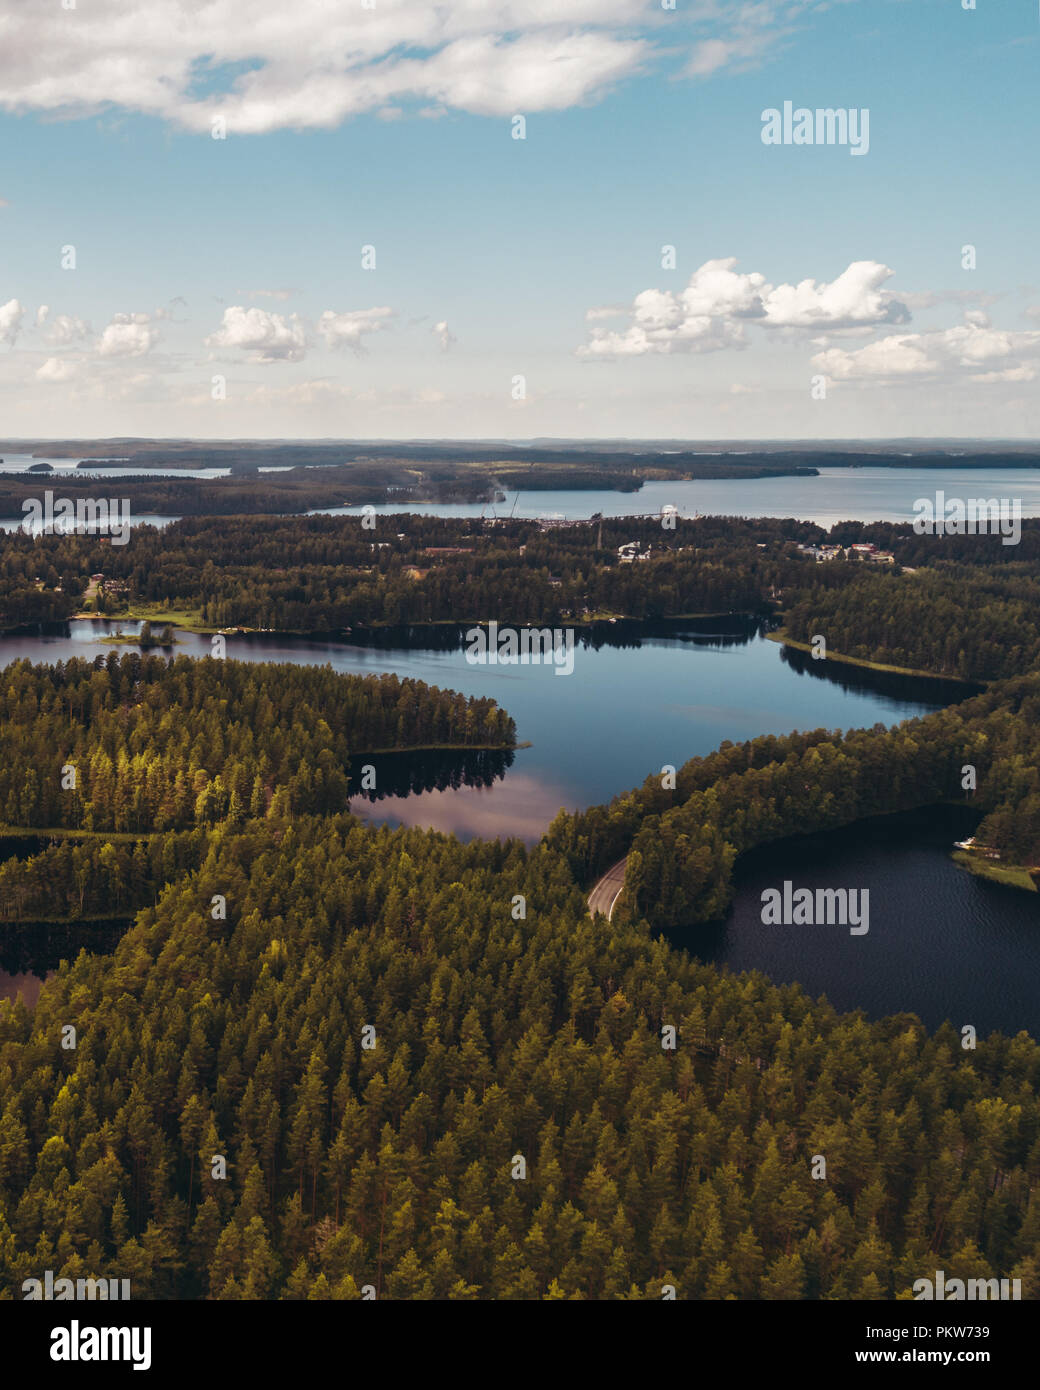 Finlande Punkaharju, avec des lacs scintillants entre le grand pins qui poussent sur les deux côtés de la crête, est le plus connu des paysages nationaux et stro Banque D'Images